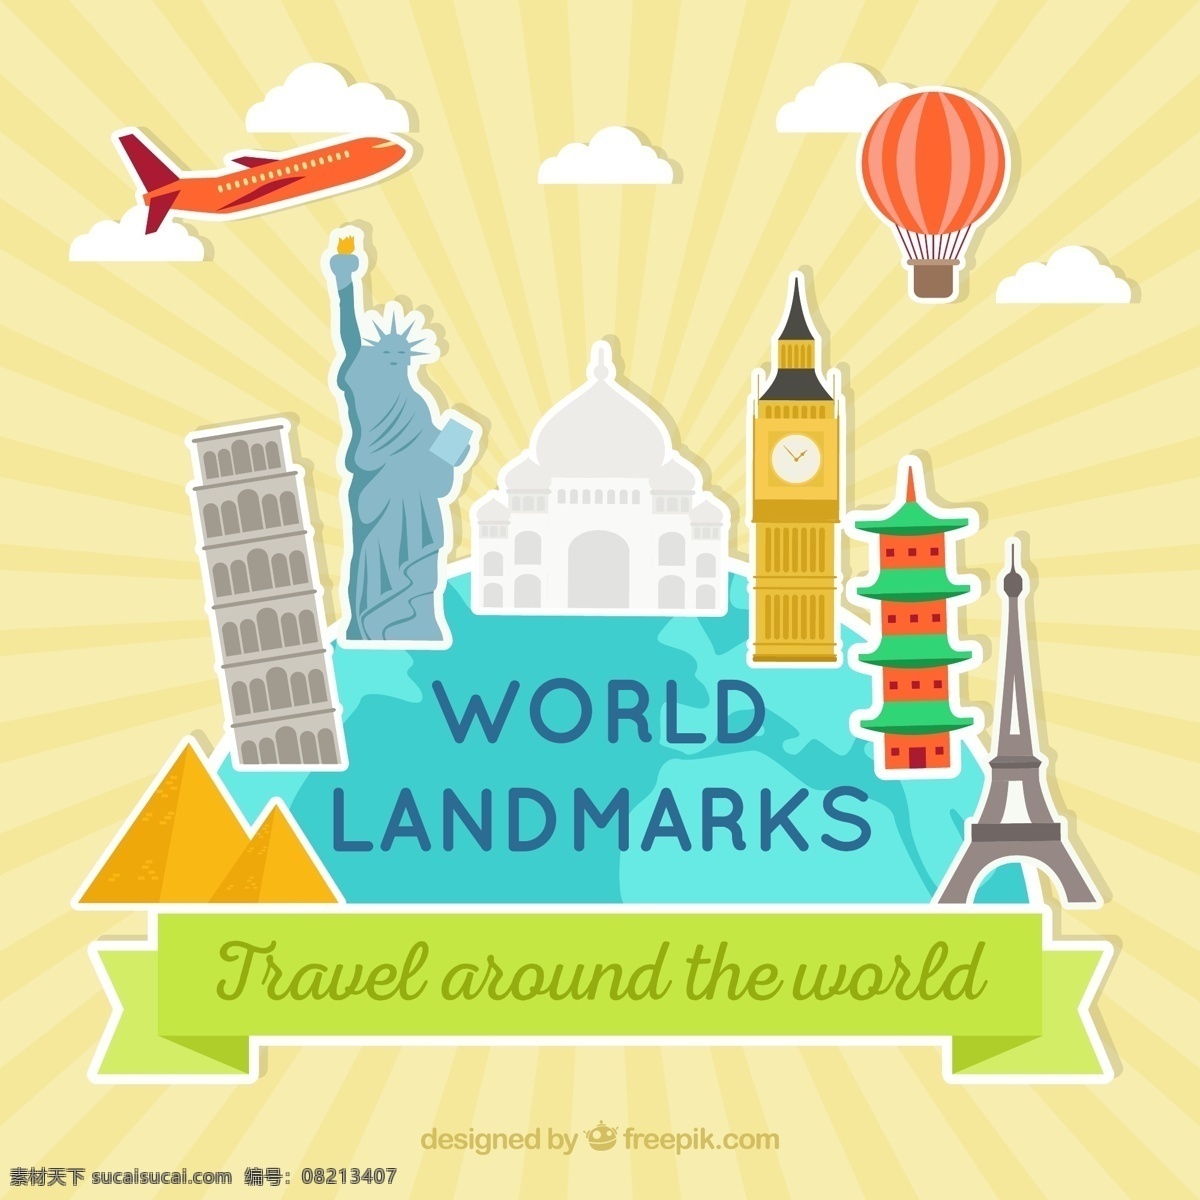 世界地标贴纸 旅游 世界 飞机 日本 气球 标签 印度 伦敦 建筑 贴纸 度假 法国 埃菲尔铁塔 金字塔 埃及 国家 旅行 文化 塔